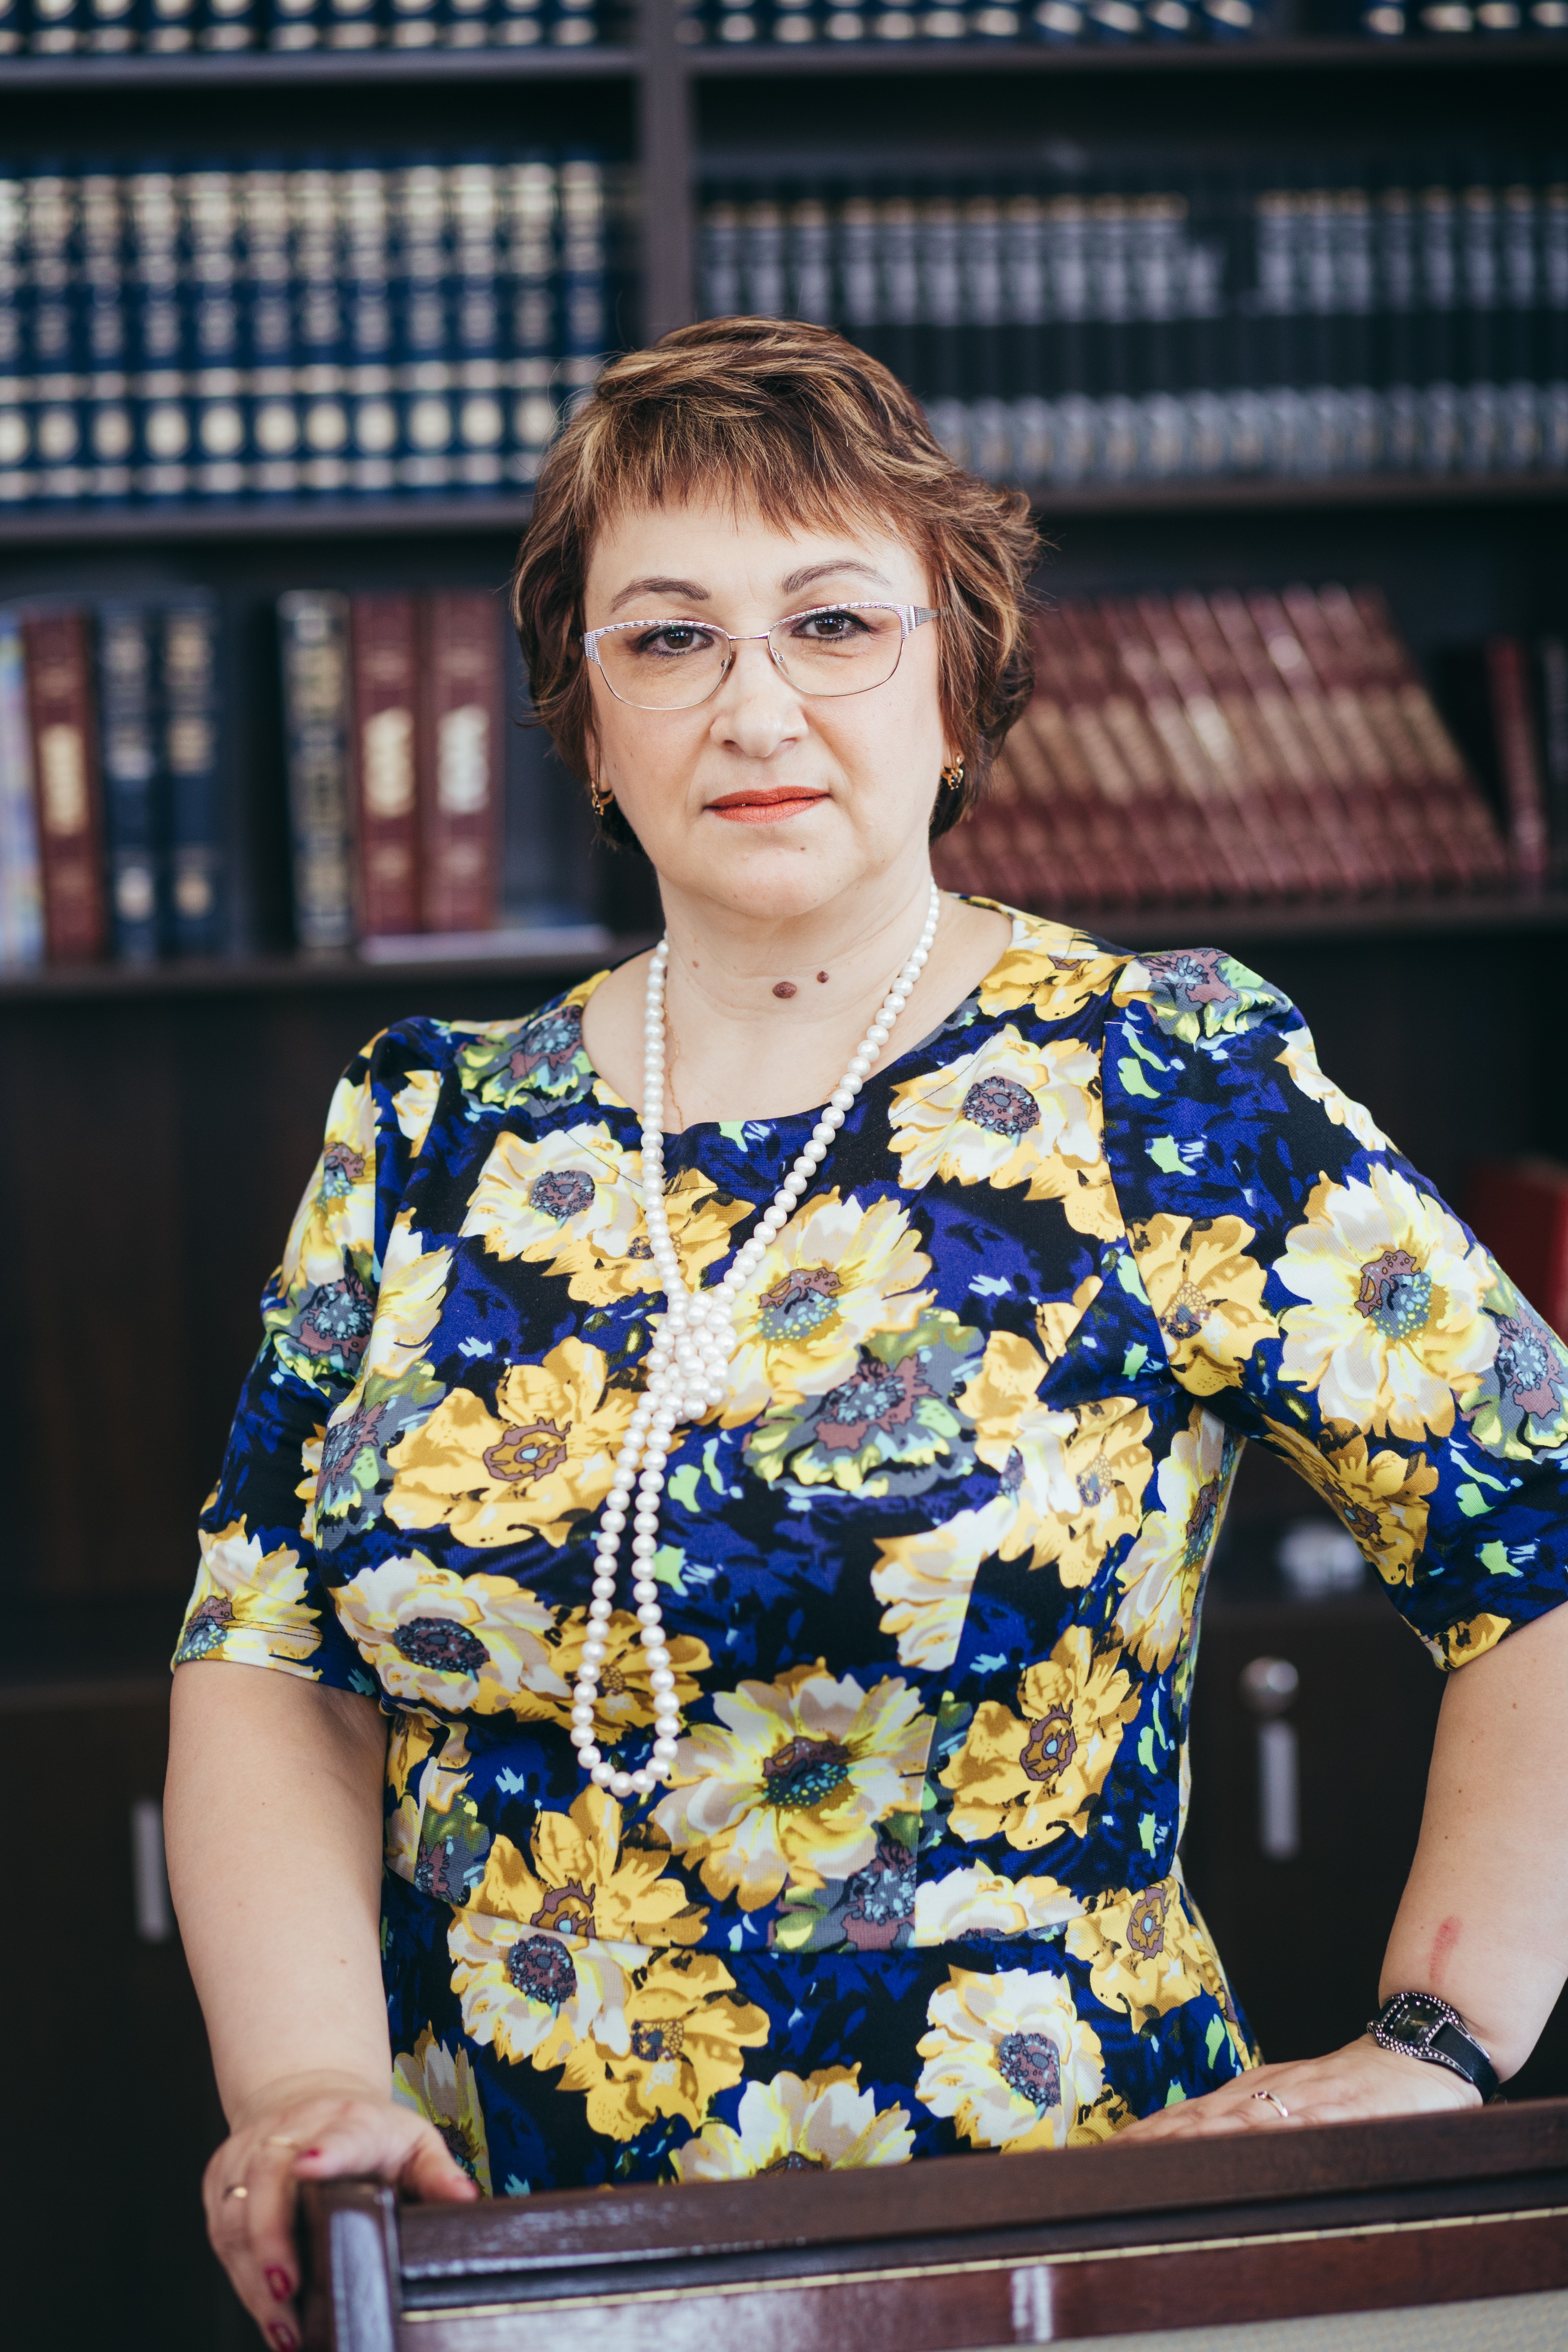 Родионова Ирина Евгеньевна